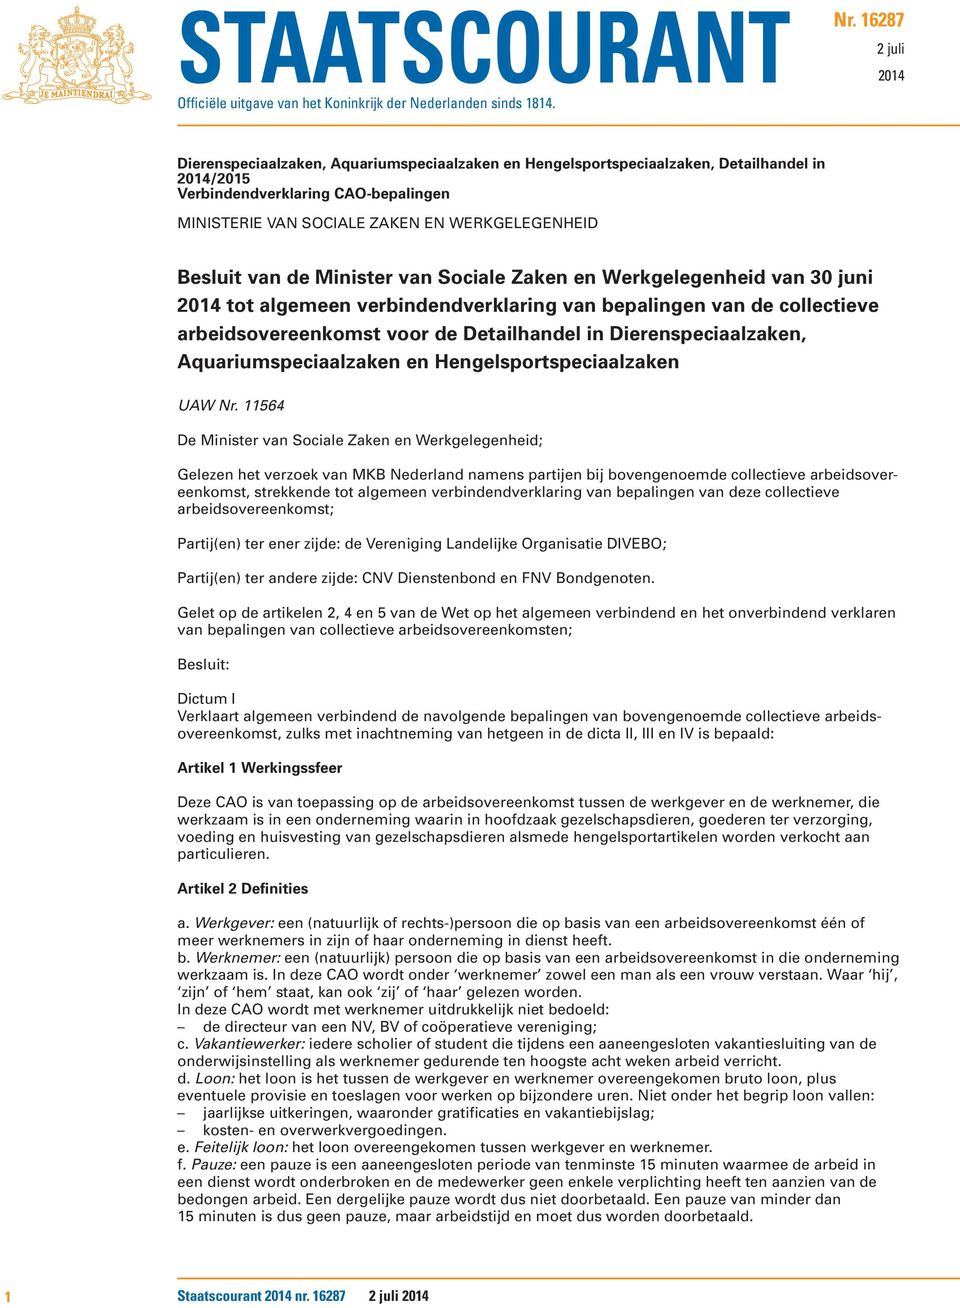 Besluit van de Minister van Sociale Zaken en Werkgelegenheid van 30 juni 2014 tot algemeen verbindendverklaring van bepalingen van de collectieve arbeidsovereenkomst voor de Detailhandel in